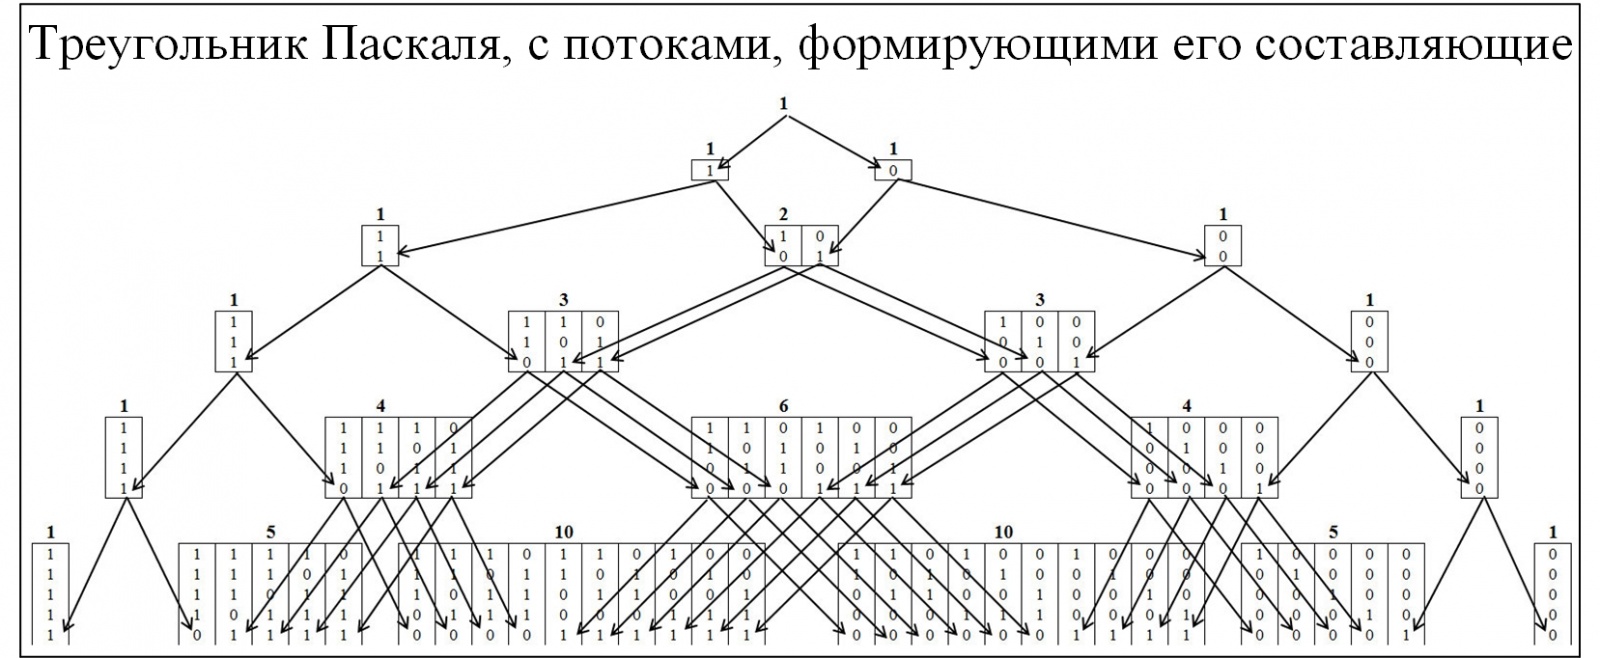 Треугольник Паскаля vs цепочек типа «000…-111…» в бинарных рядах и нейронных сетях - 2